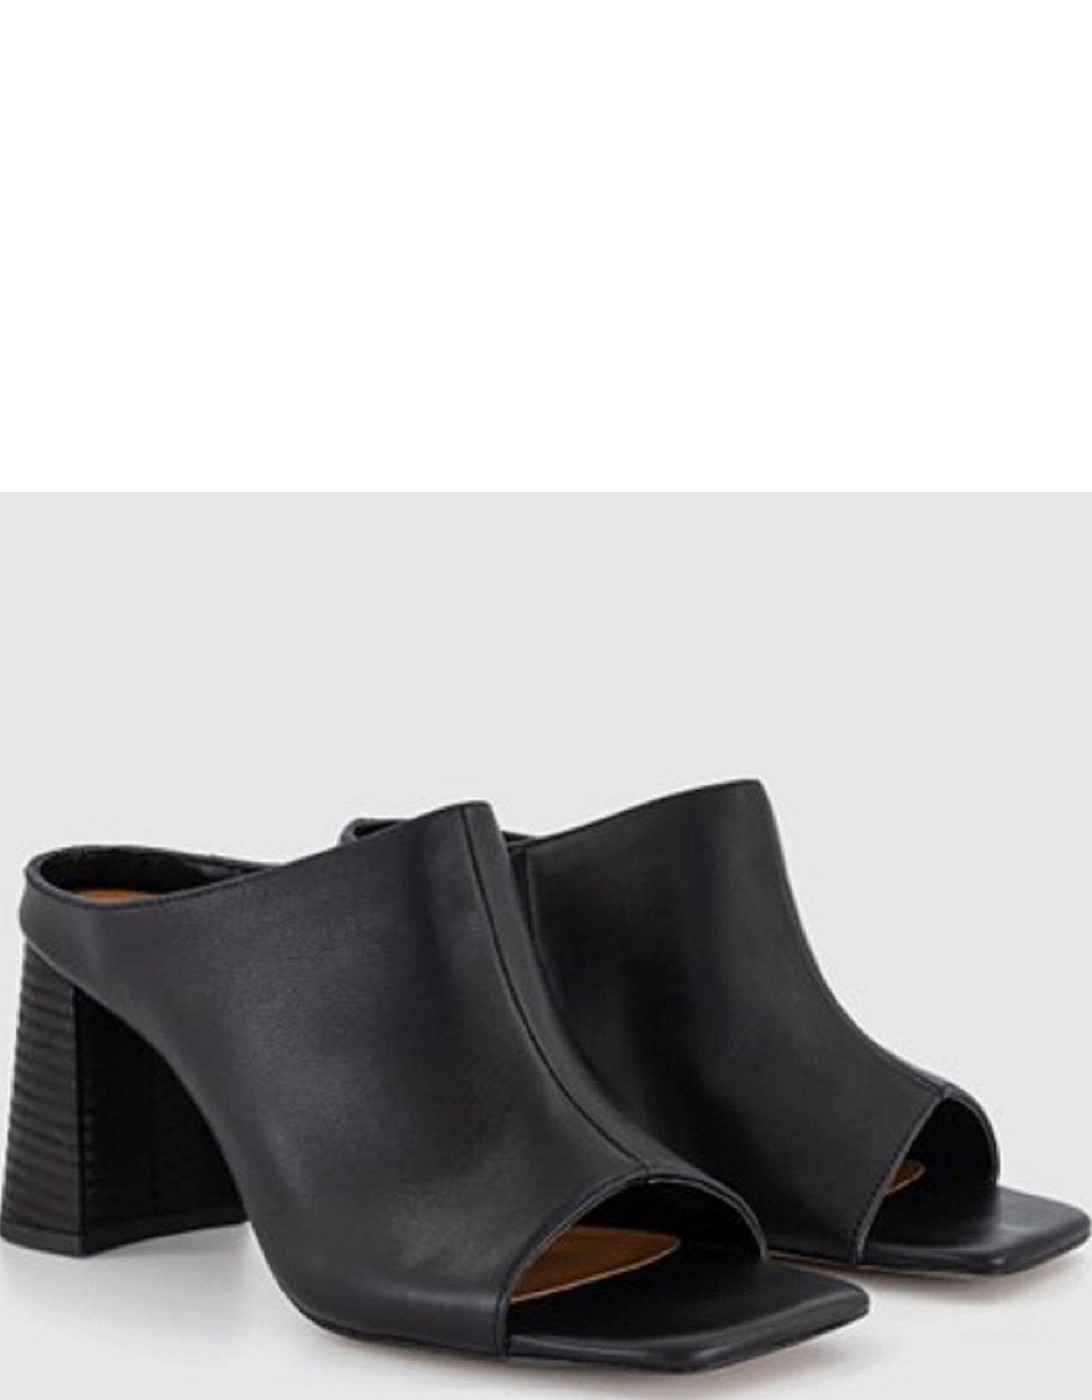 Marlowe Leather Mule Heeled Sandal - Black